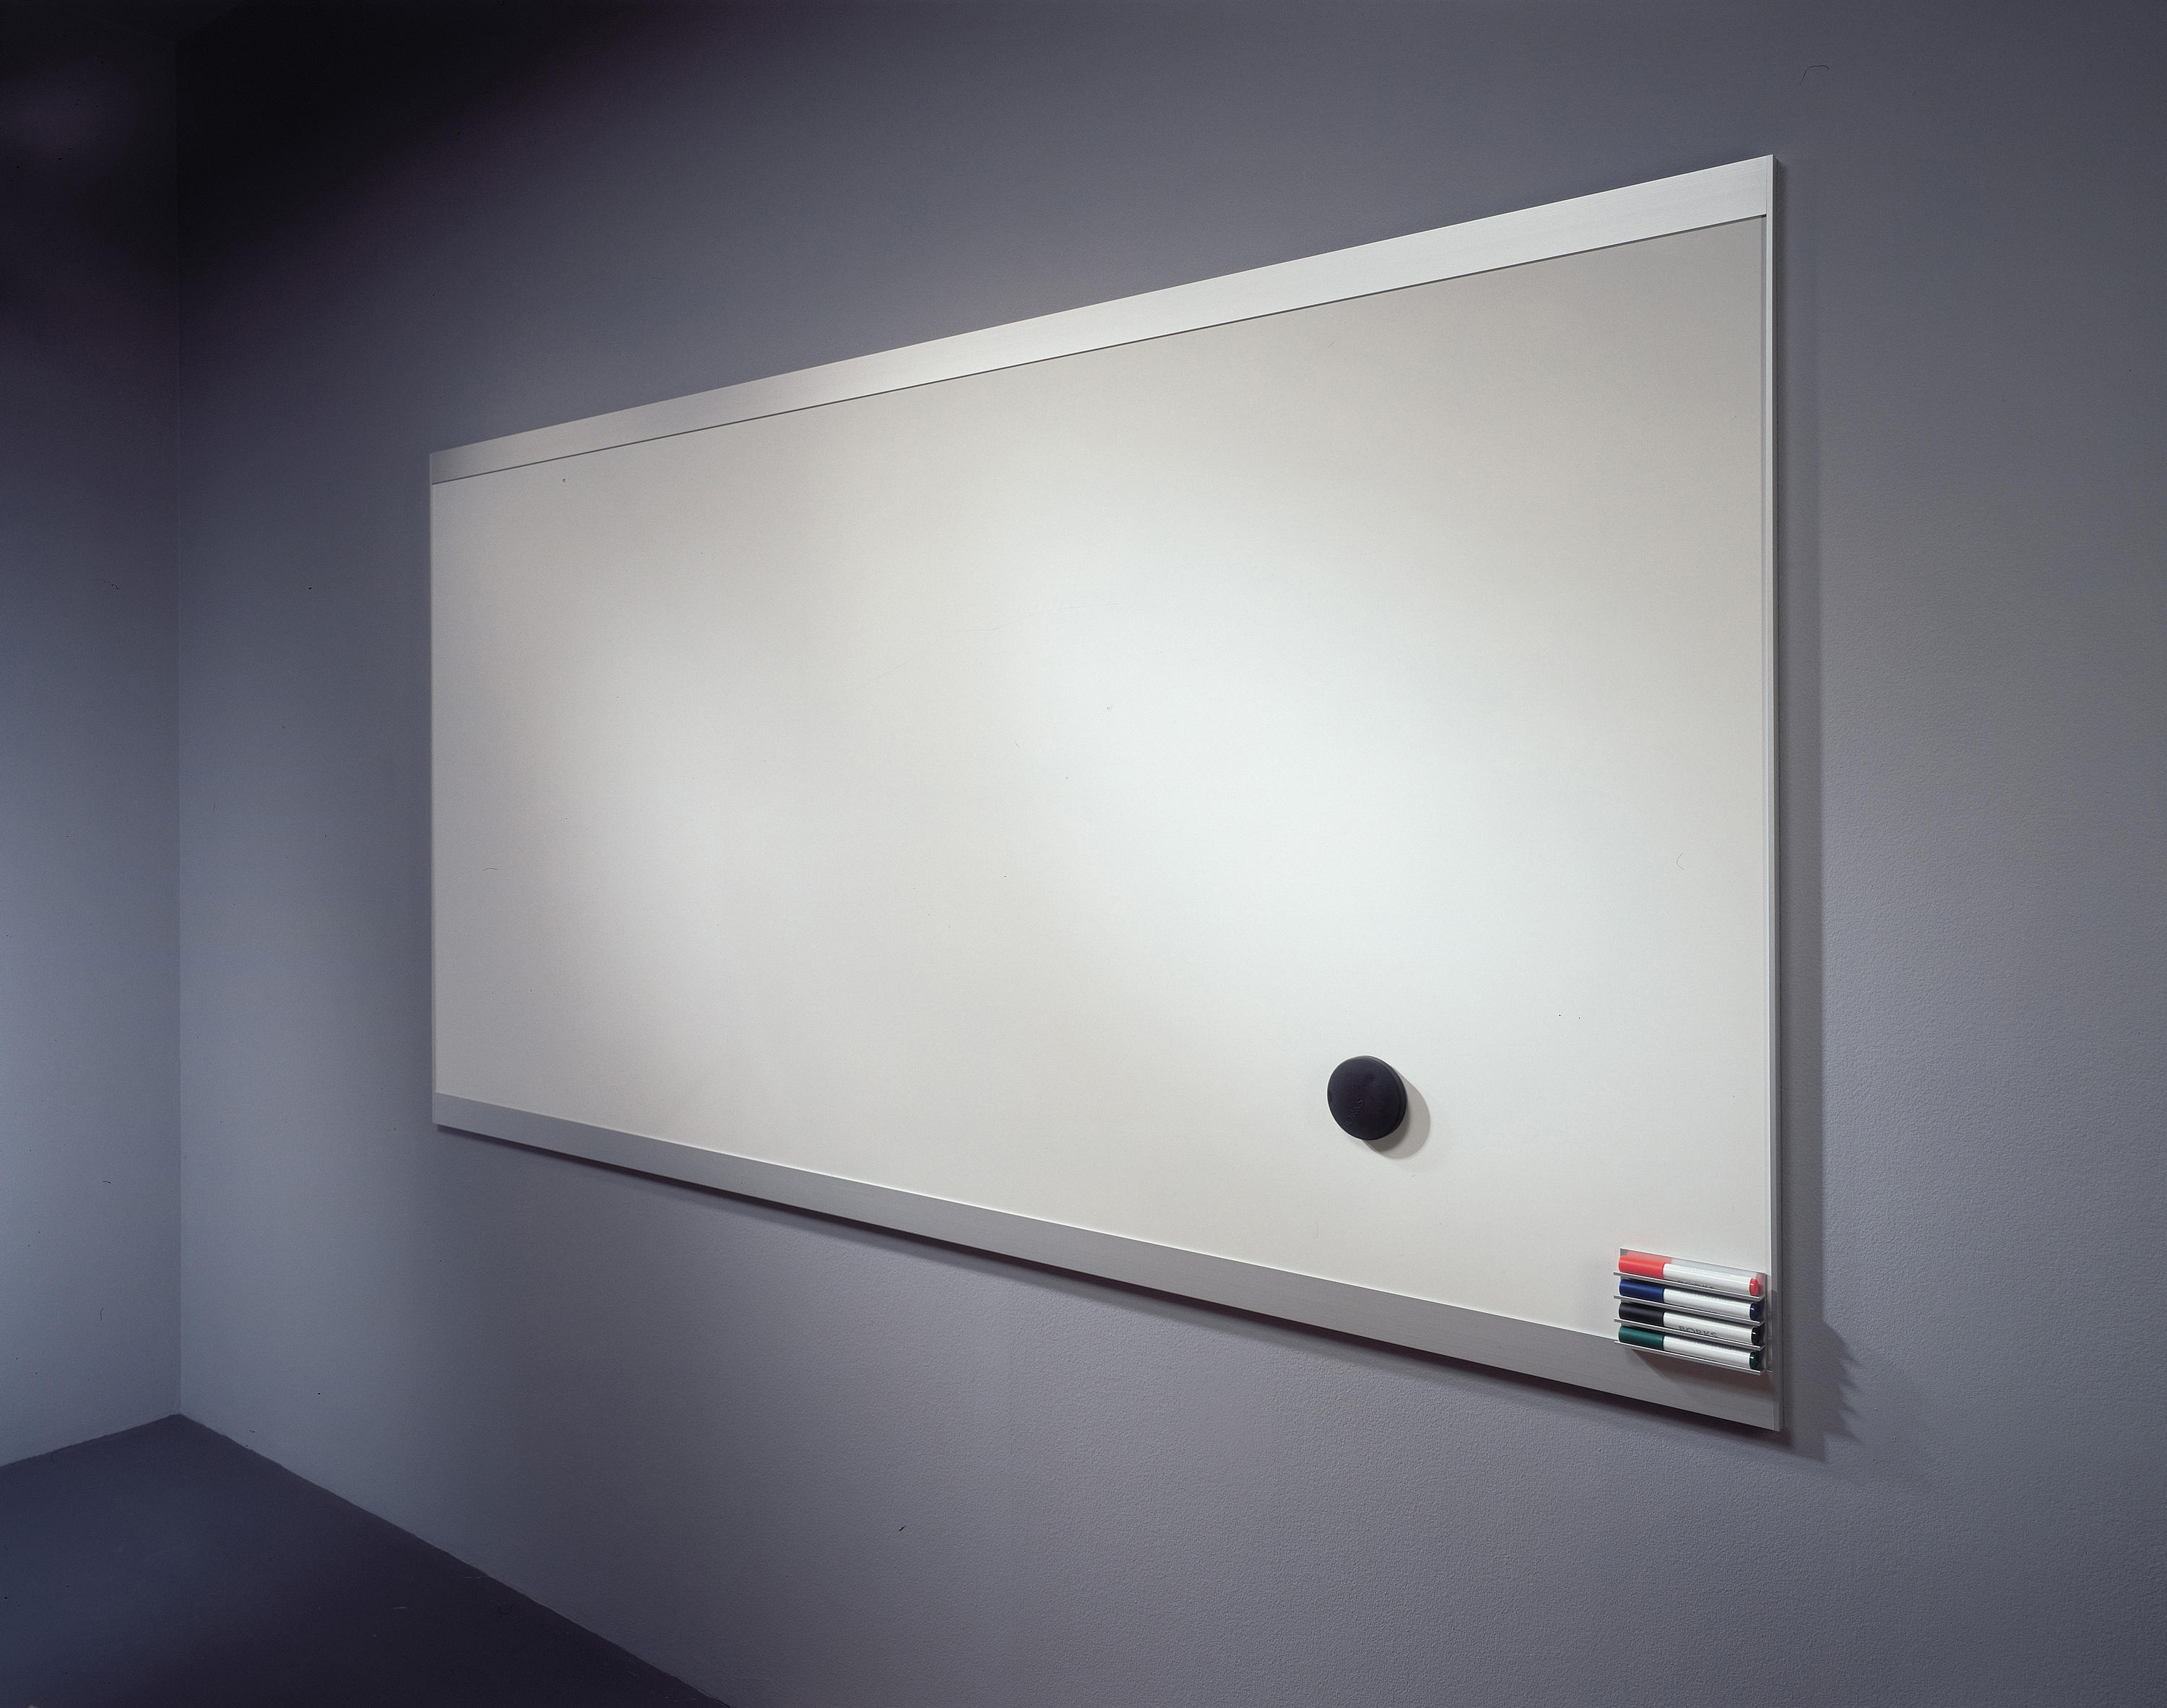 Whiteboard - Hochwertige Designerprodukte | Architonic